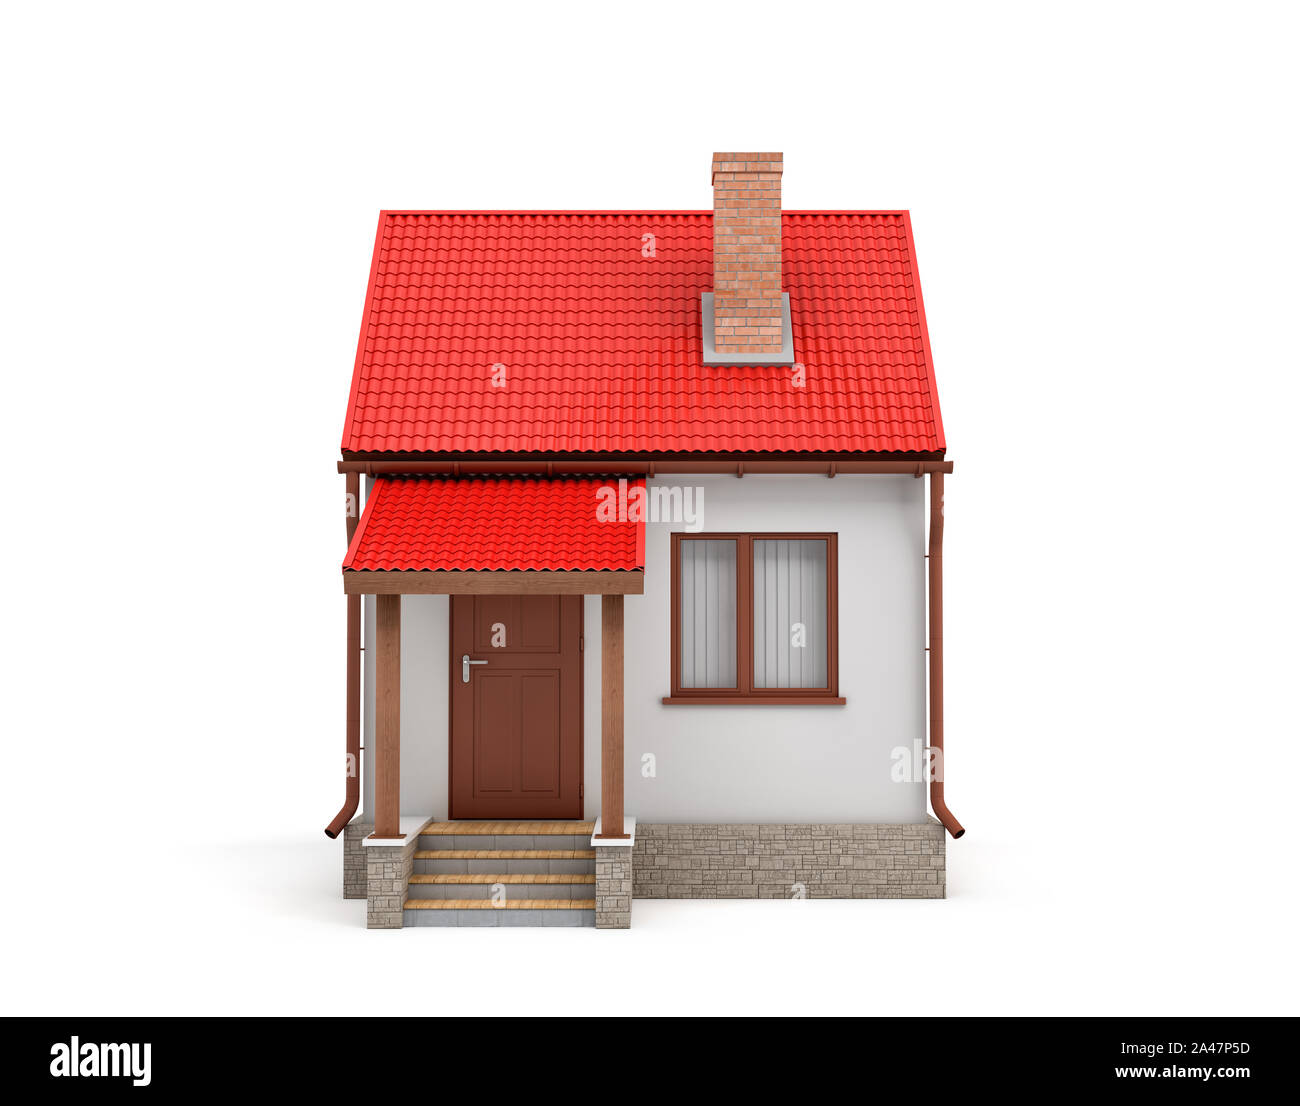 3D-Rendering eines kleinen Wohnhauses mit einem Kamin und einem roten Dach auf einem weißen Hintergrund. Haus und Hof. Living Place. Erstellen Sie Ihre eigene Startseite. Stockfoto